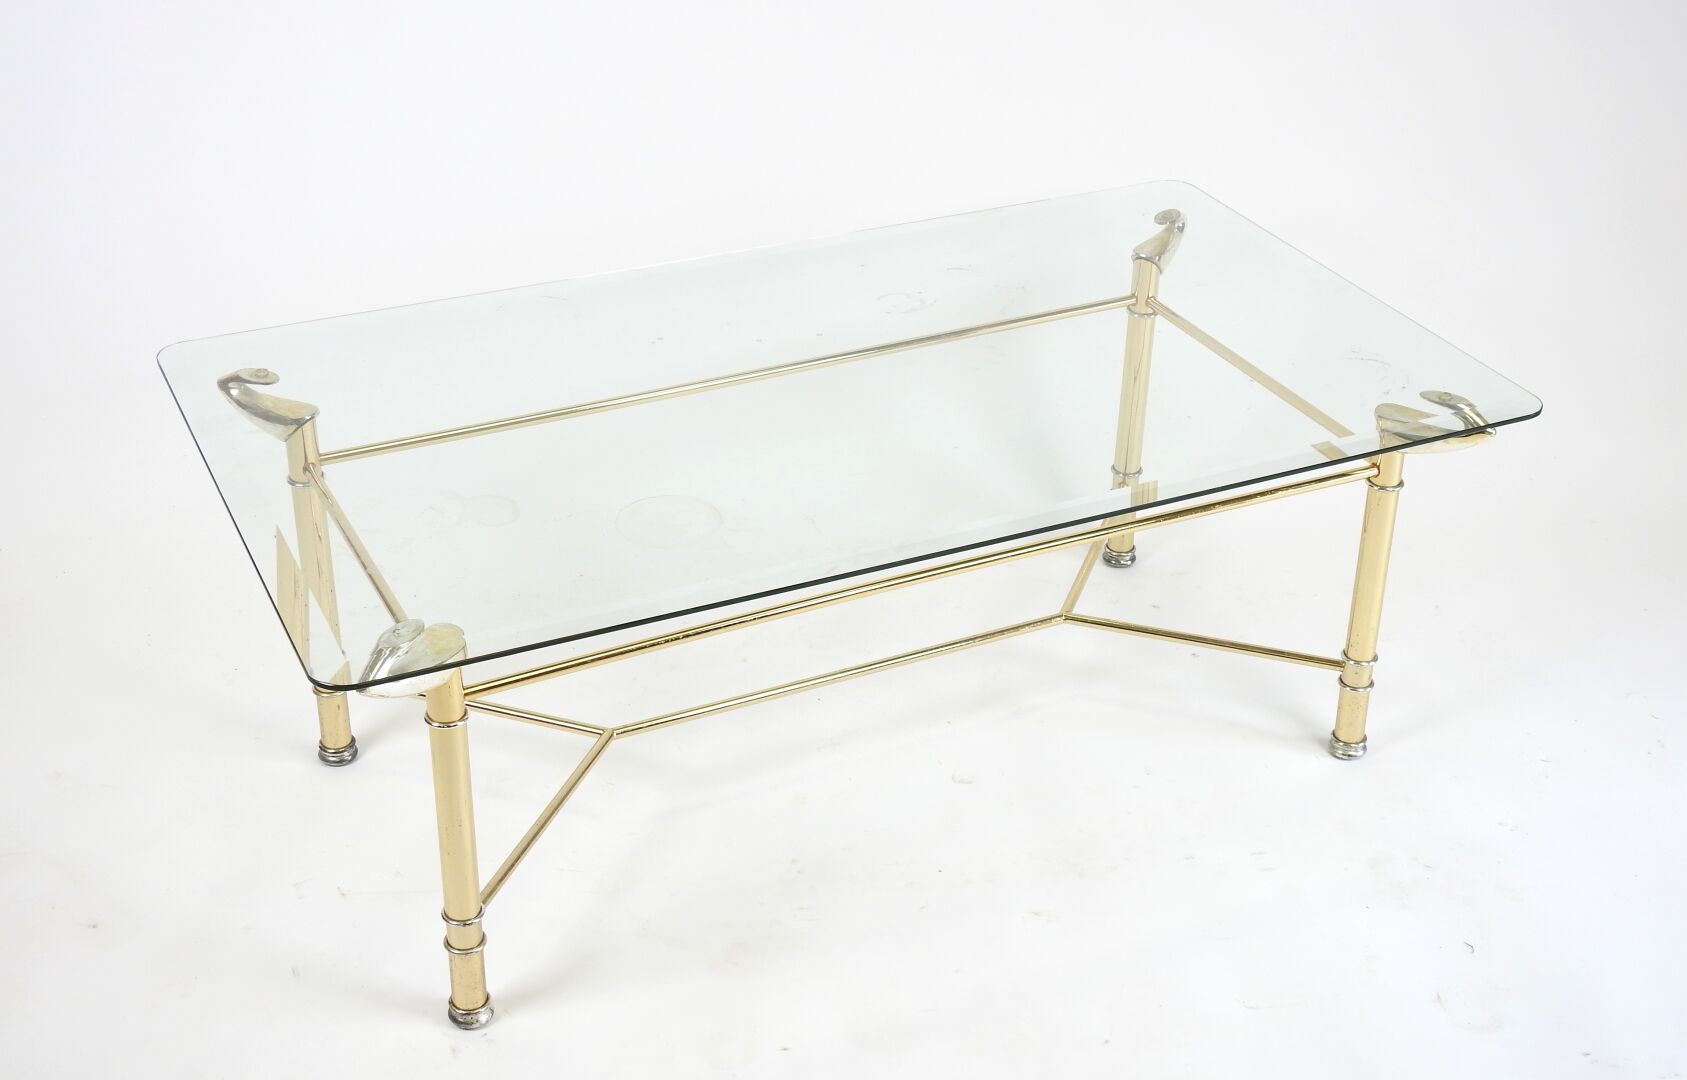 Null 长方形咖啡桌，镀金金属结构，桌腿由支架连接，桌面为斜面玻璃。
制作于上世纪八九十年代。
41.5 x 114 x 64 厘米。
(轻微磨损）。